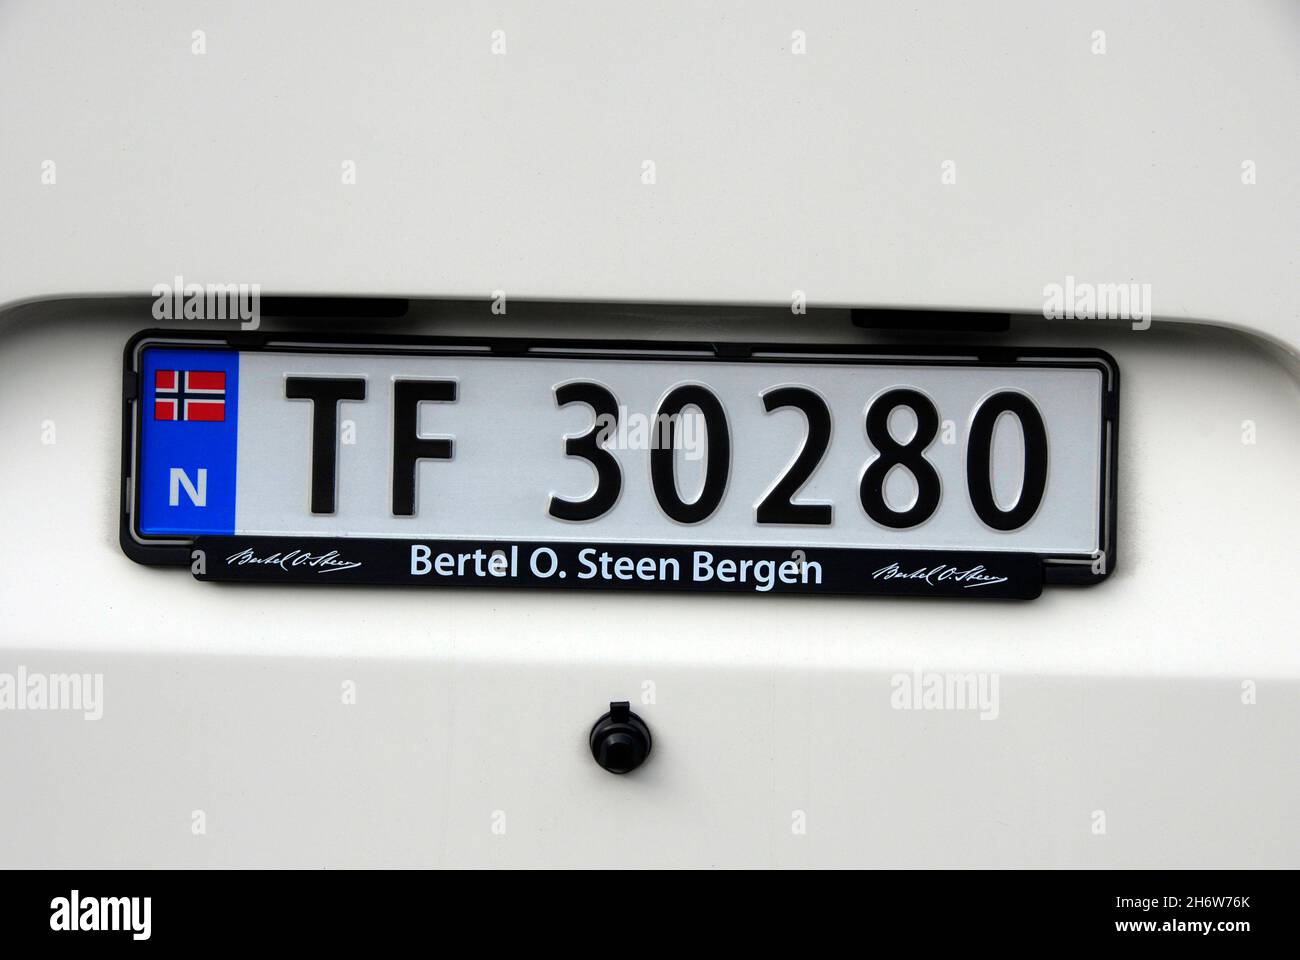 Kennzeichen am Fahrzeug, Norwegen Stockfoto